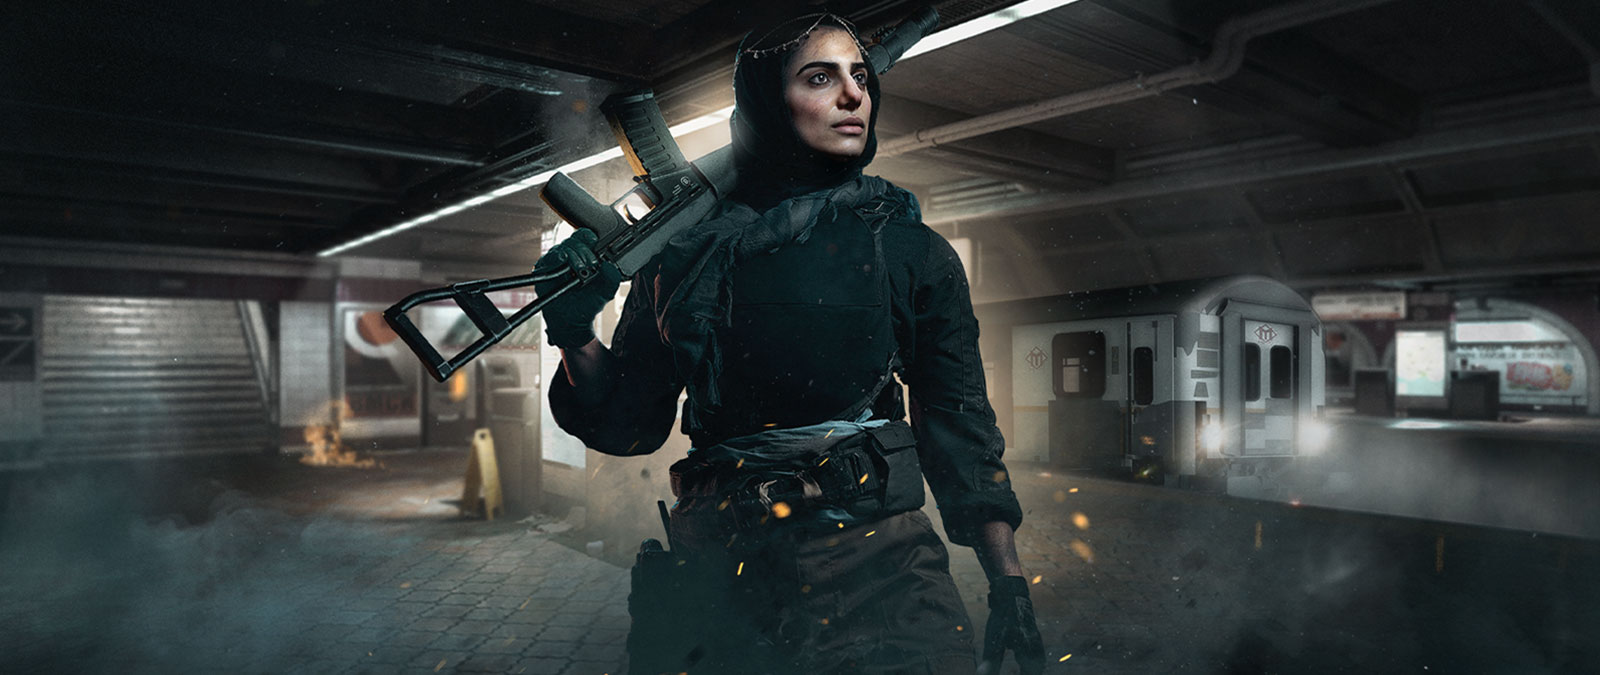 Χαρακτήρας του Call of Duty: Modern Warfare που κρατάει ένα όπλο σε σταθμό του μετρό